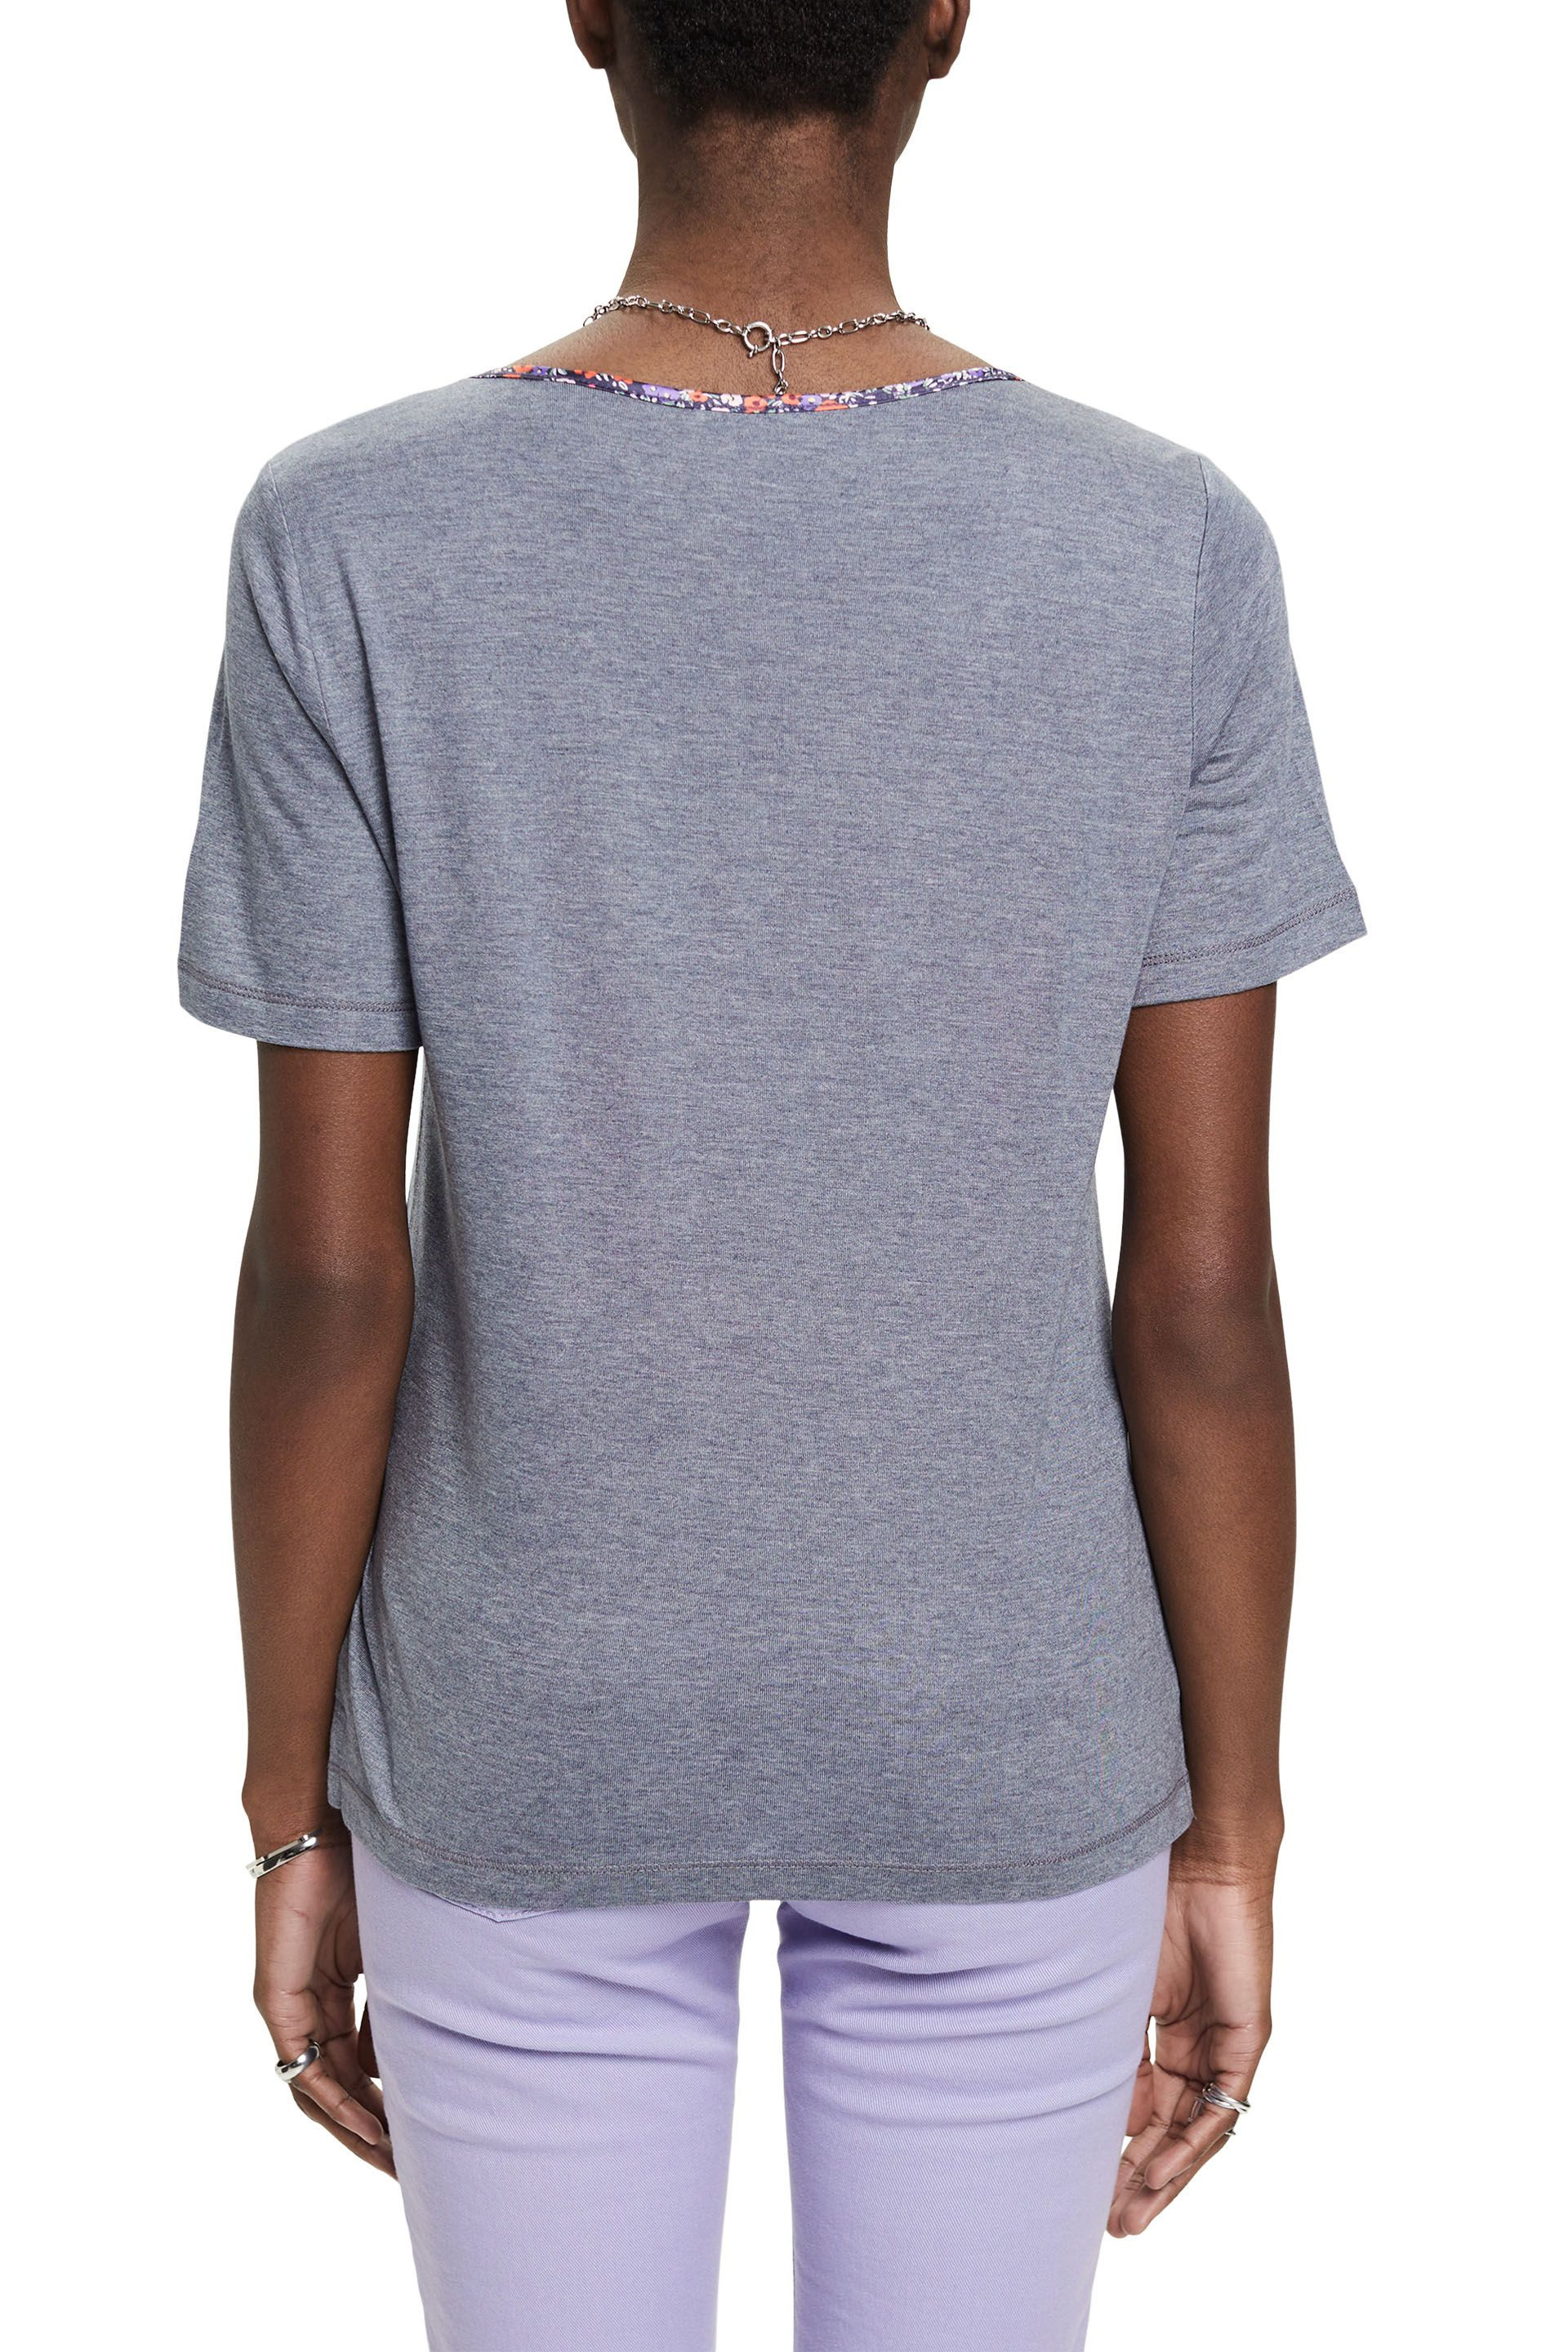 Esprit - T-shirt con scollo a V floreale, Arancione chiaro, large image number 3